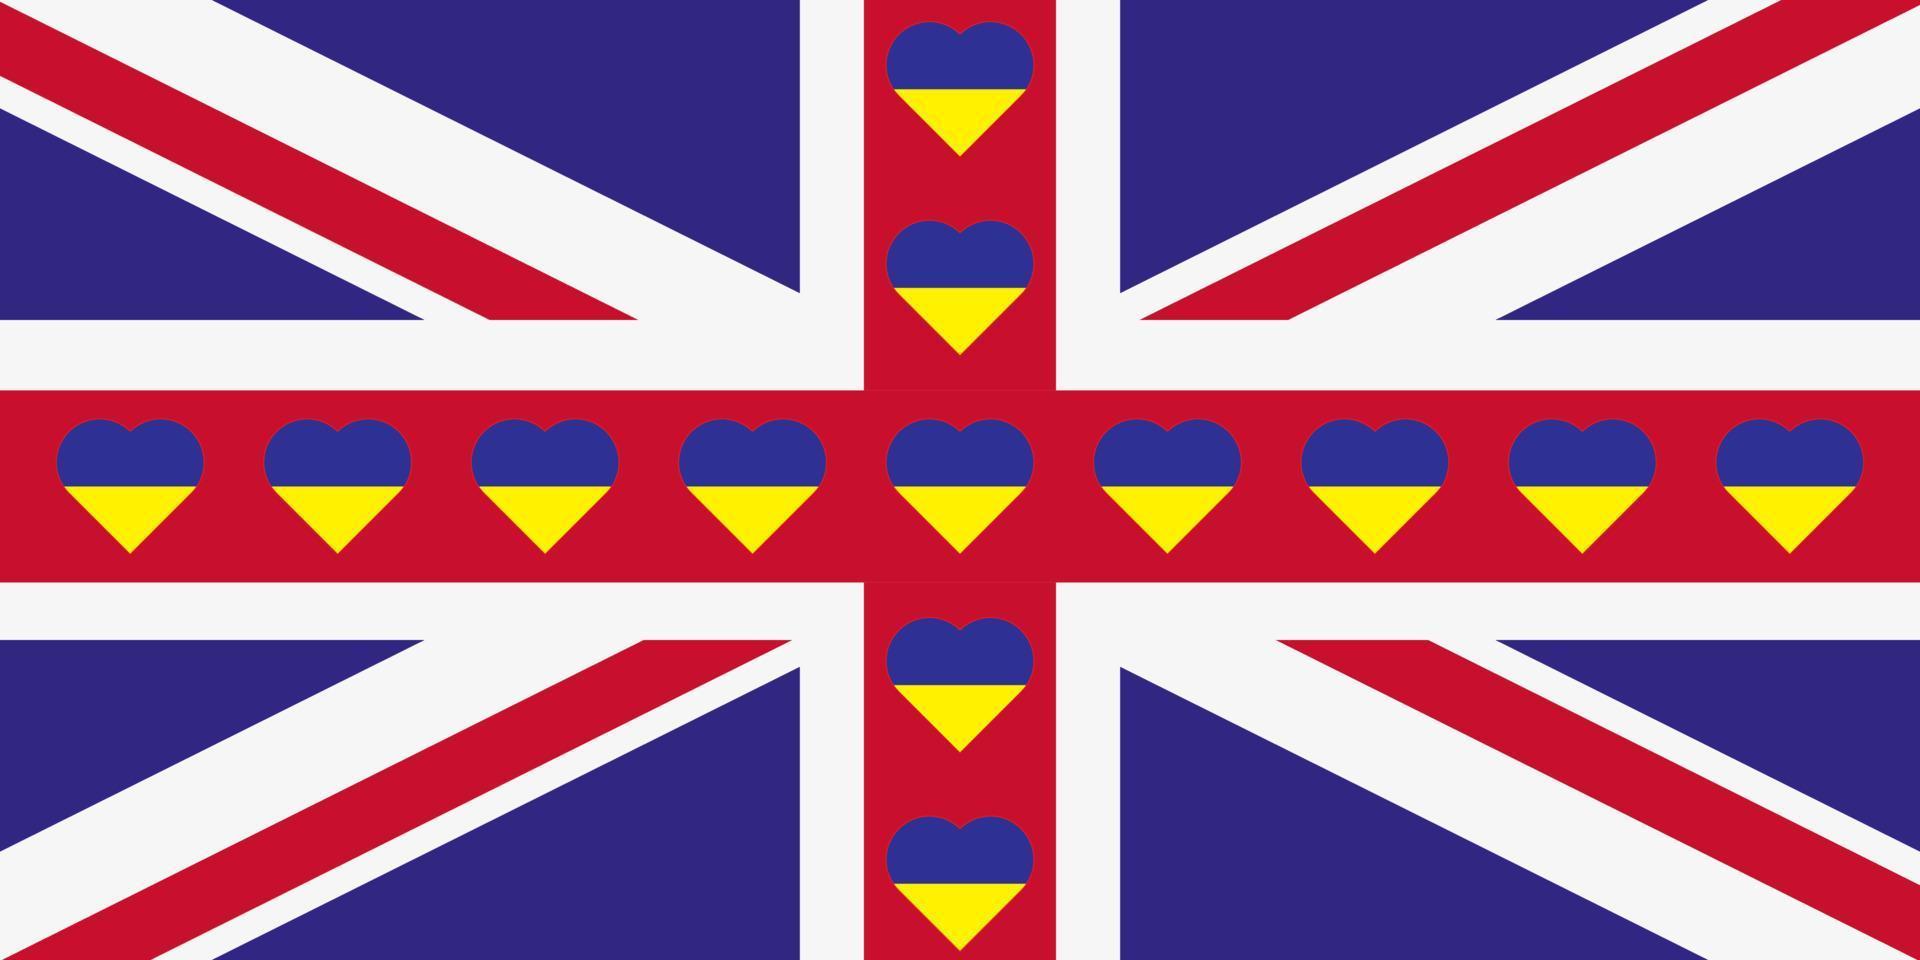 herz gemalt in den farben der flagge großbritanniens auf der flagge der ukraine. vektorillustration eines herzens mit dem nationalen symbol von großbritannien auf einem blau-gelben hintergrund. vektor